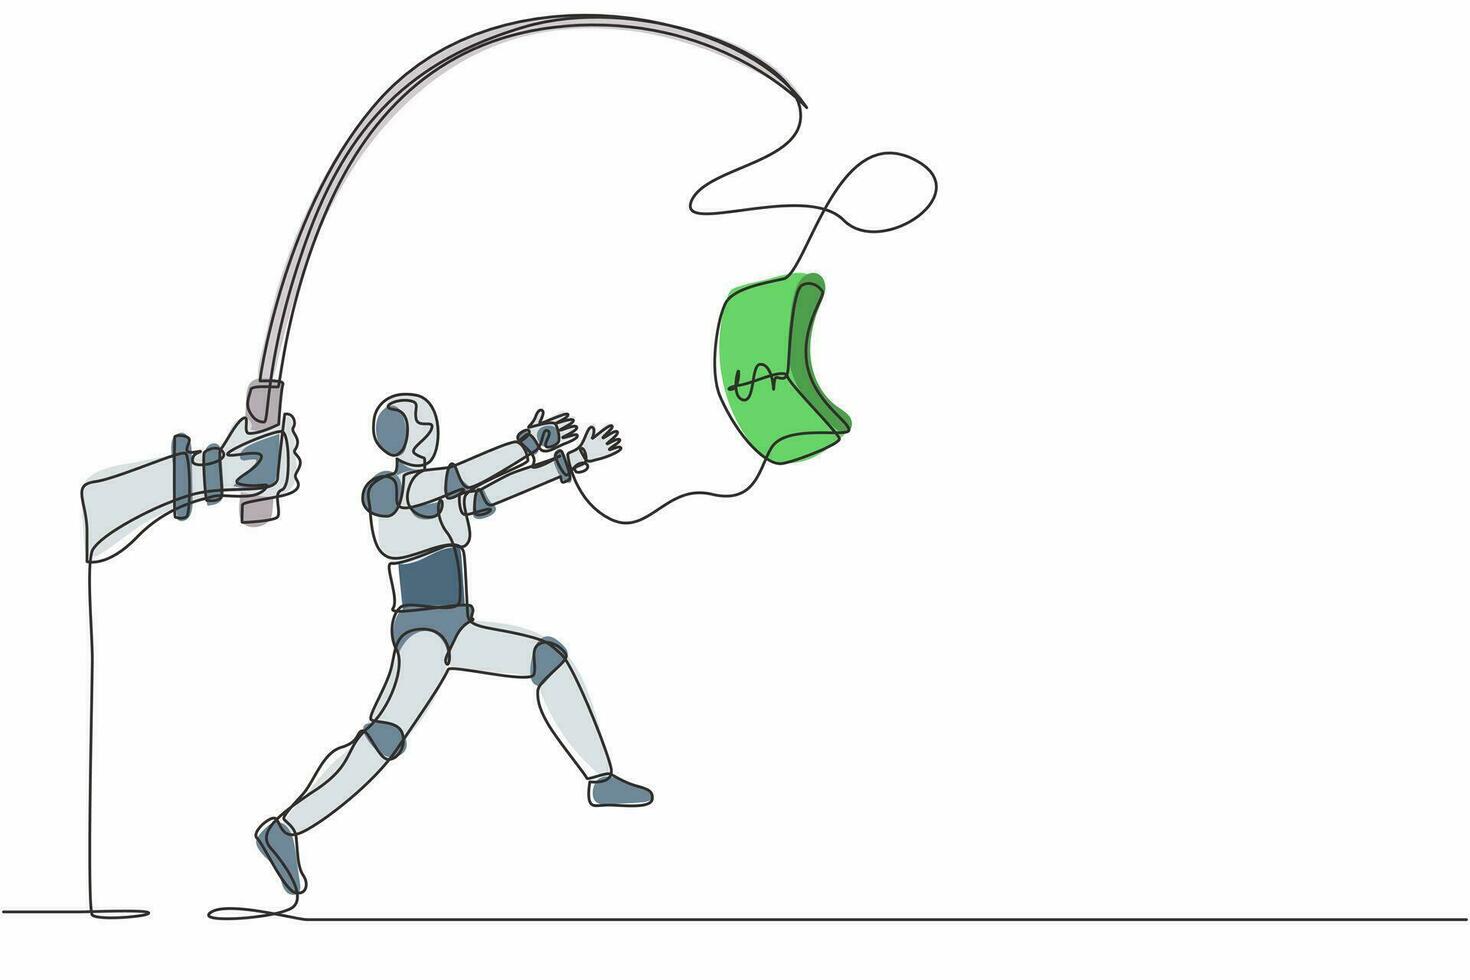 kontinuerlig en rad ritning hand med fiskespö och dollar kontanter kontroll giriga robot. humanoid robot cybernetisk organism. framtida robotutveckling. enkel rad rita design vektorillustration vektor